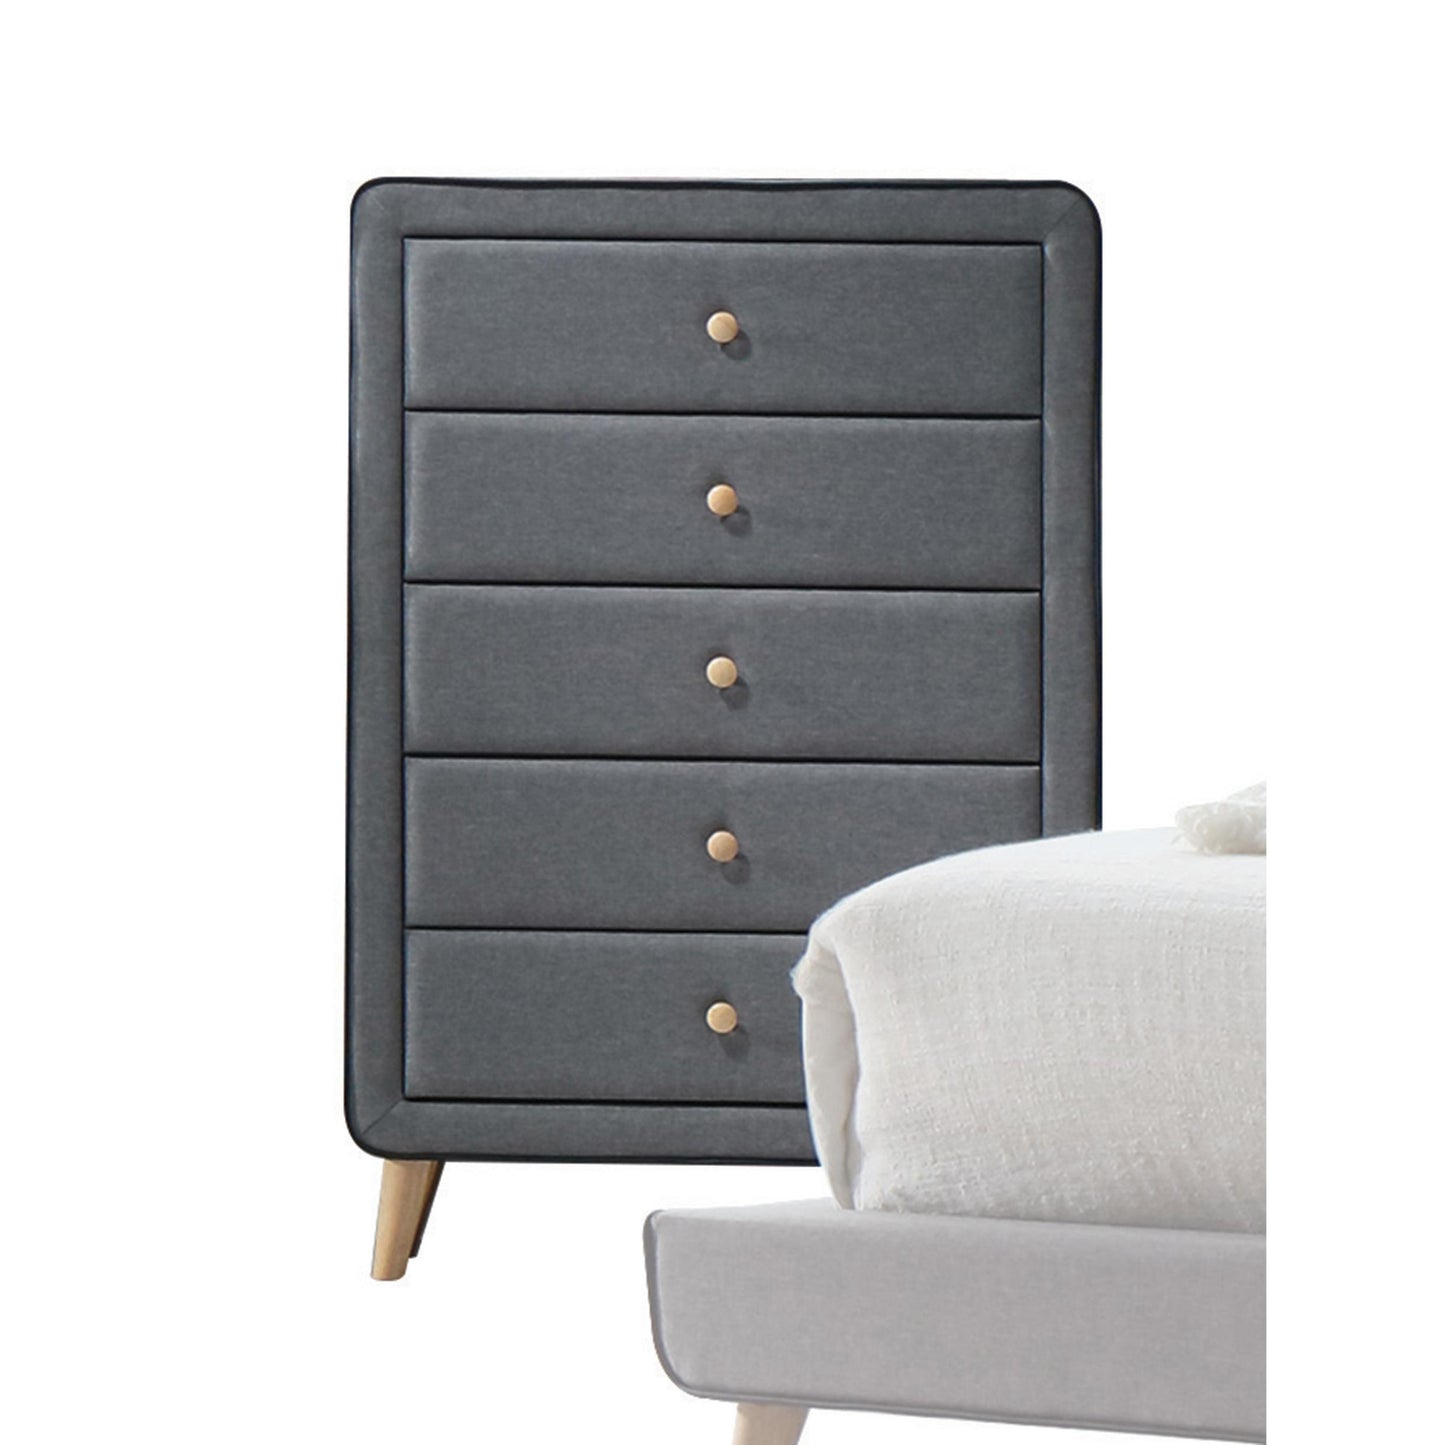 46" Light Gray Upholstery 5 Drawer Chest Dresser with light natural legs